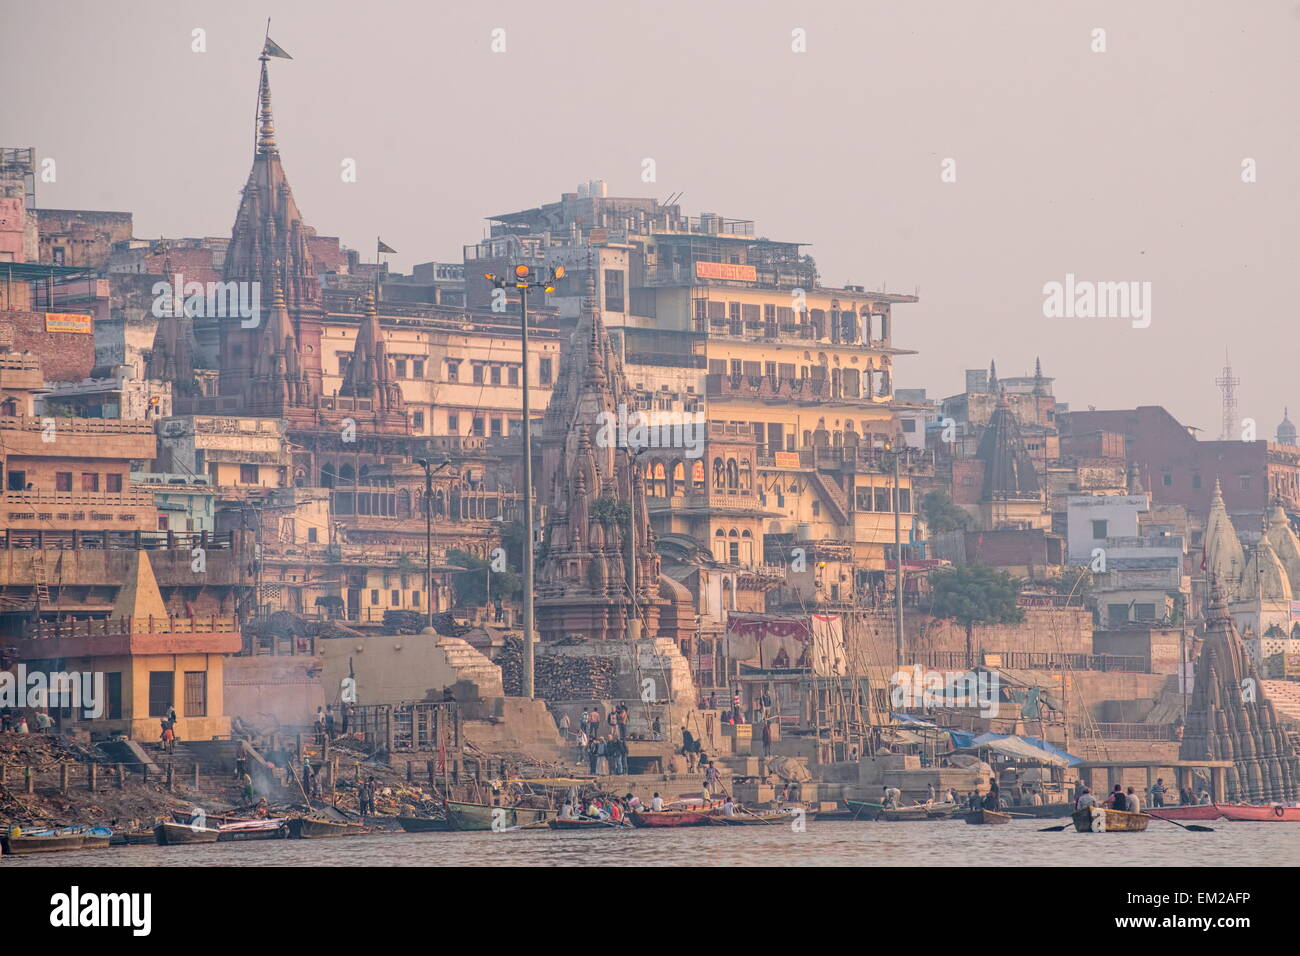 Manikarnika, the main burning ghat of Varanasi Stock Photo